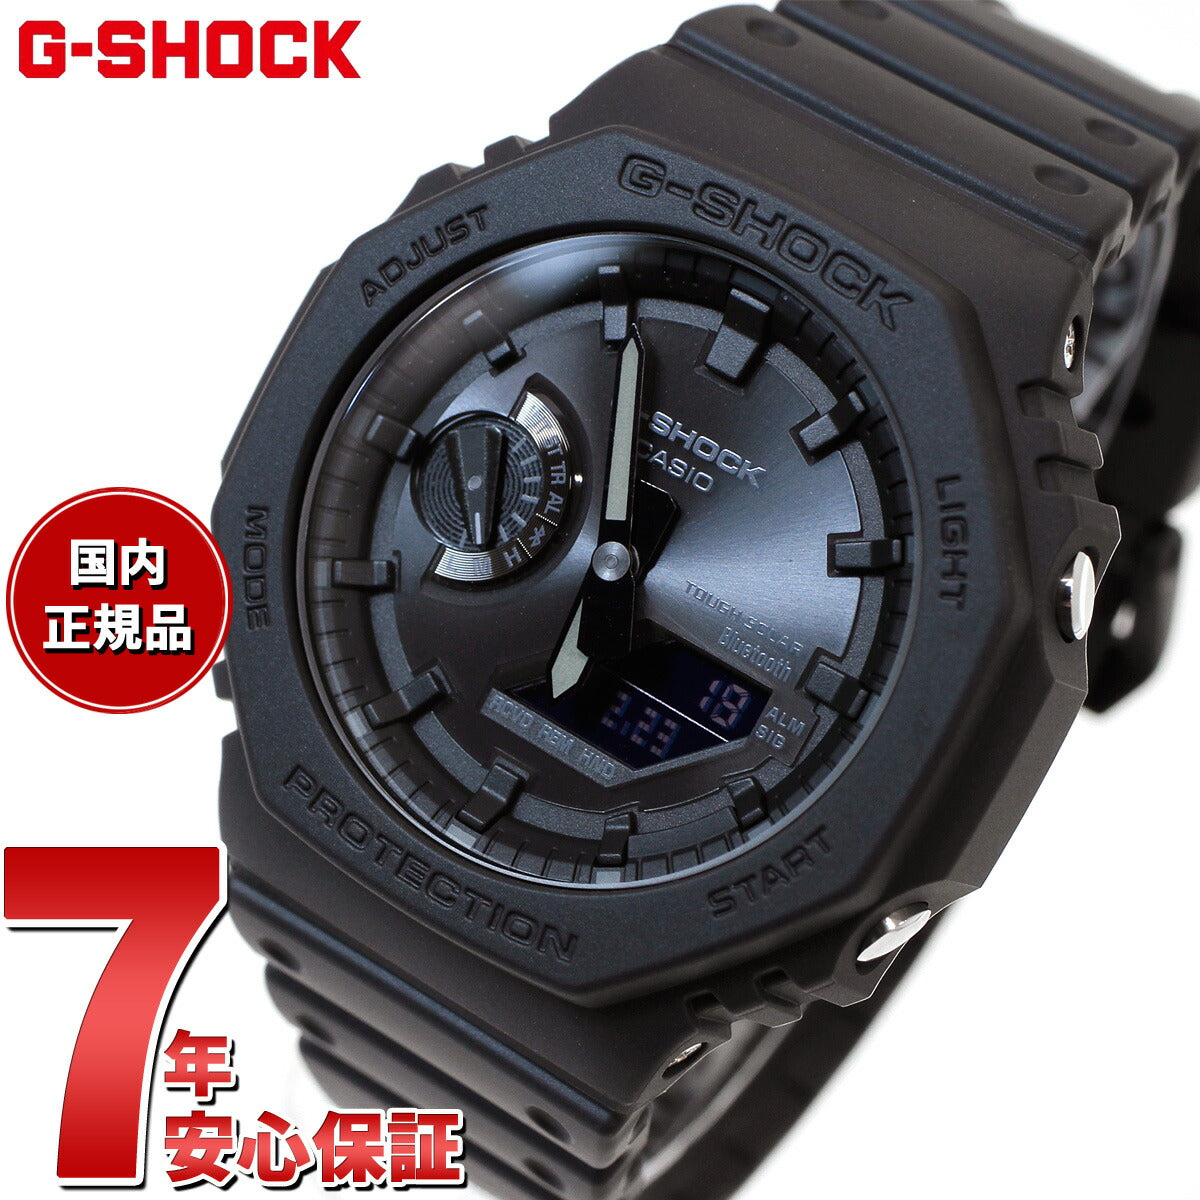 G-SHOCK ソーラー カシオ Gショック CASIO 腕時計 メンズ GA-B2100-1A1JF タフソーラー スマートフォンリンク オールブラック